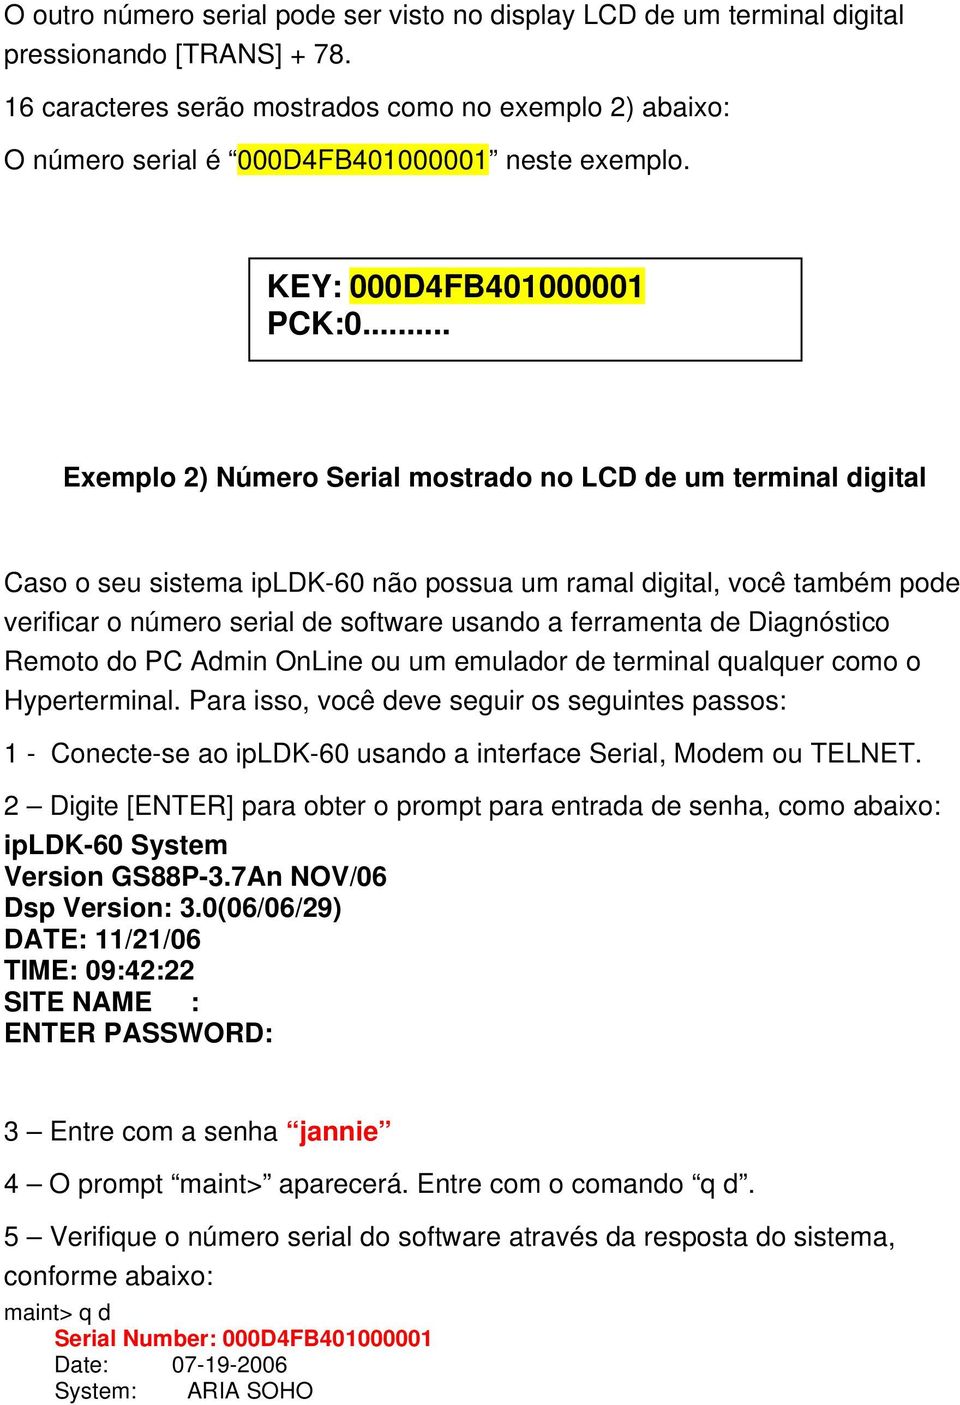 .. Exemplo 2) Número Serial mostrado no LCD de um terminal digital Caso o seu sistema ipldk-60 não possua um ramal digital, você também pode verificar o número serial de software usando a ferramenta